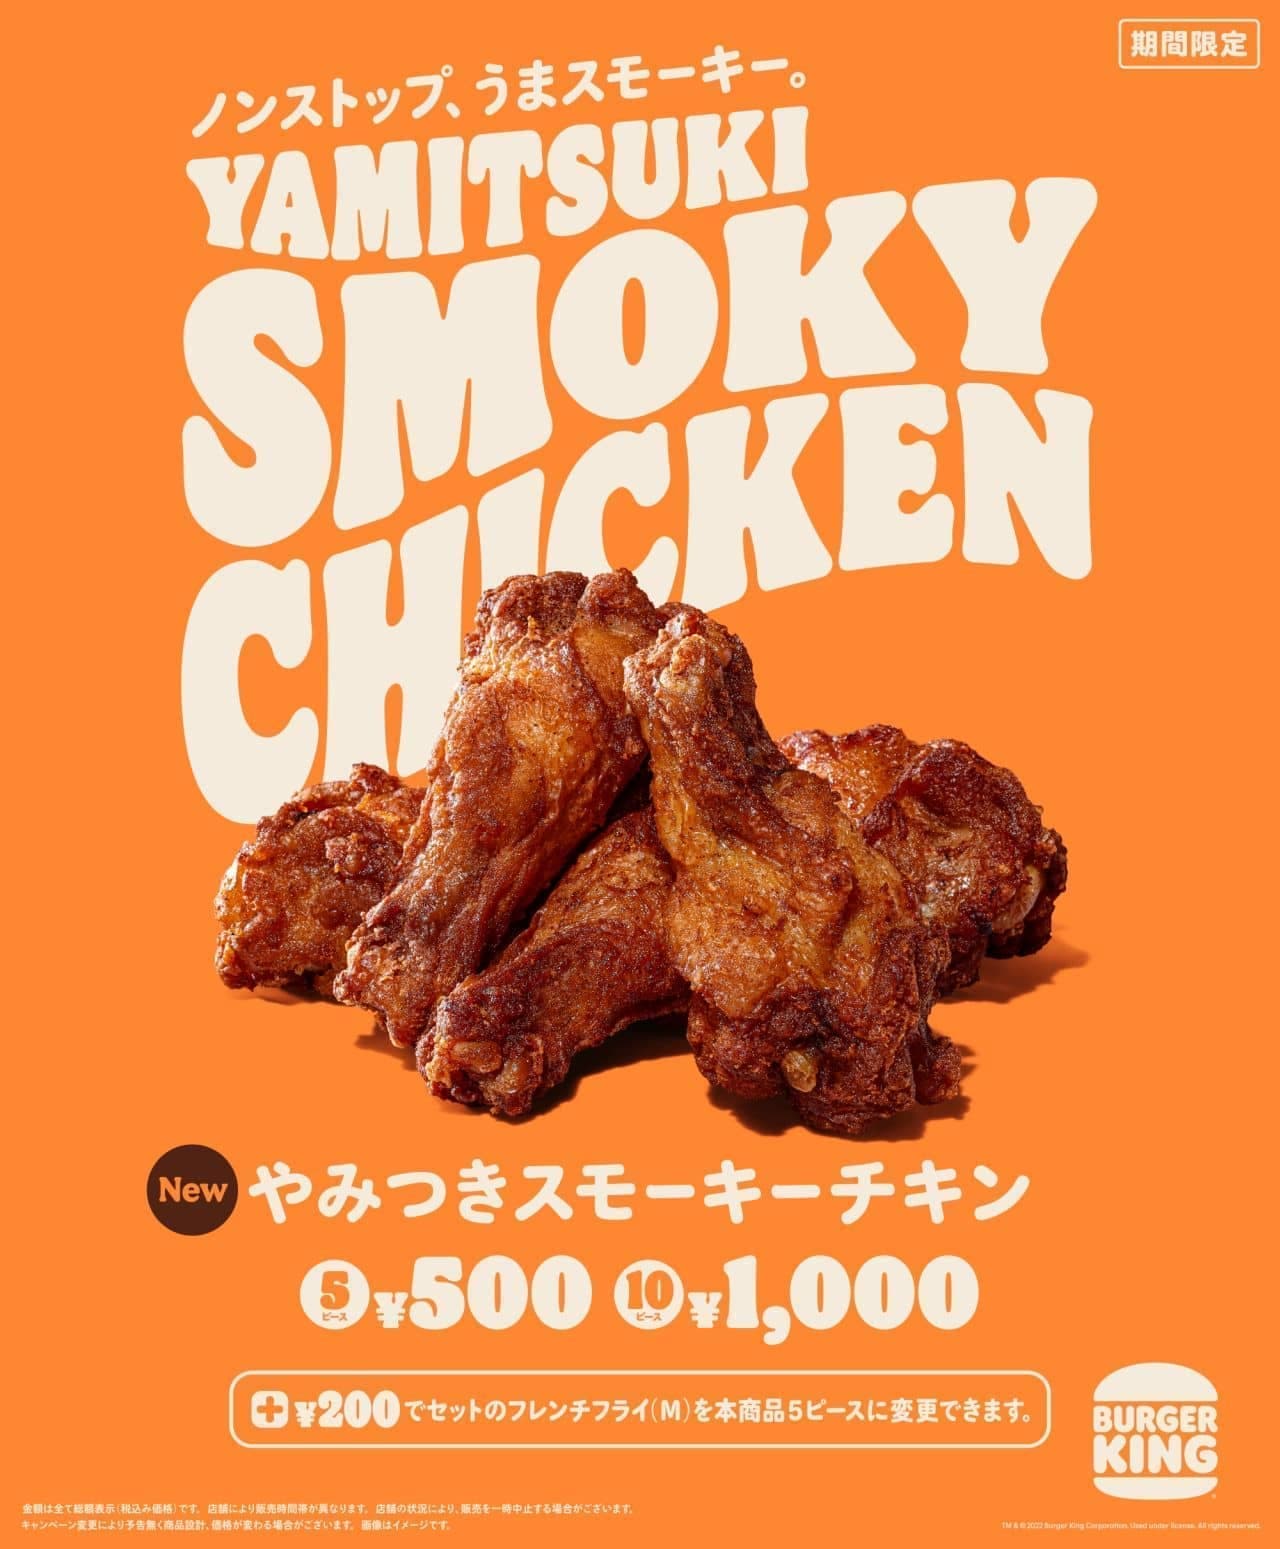 Burger King "Yakitsuki Smokey Chicken